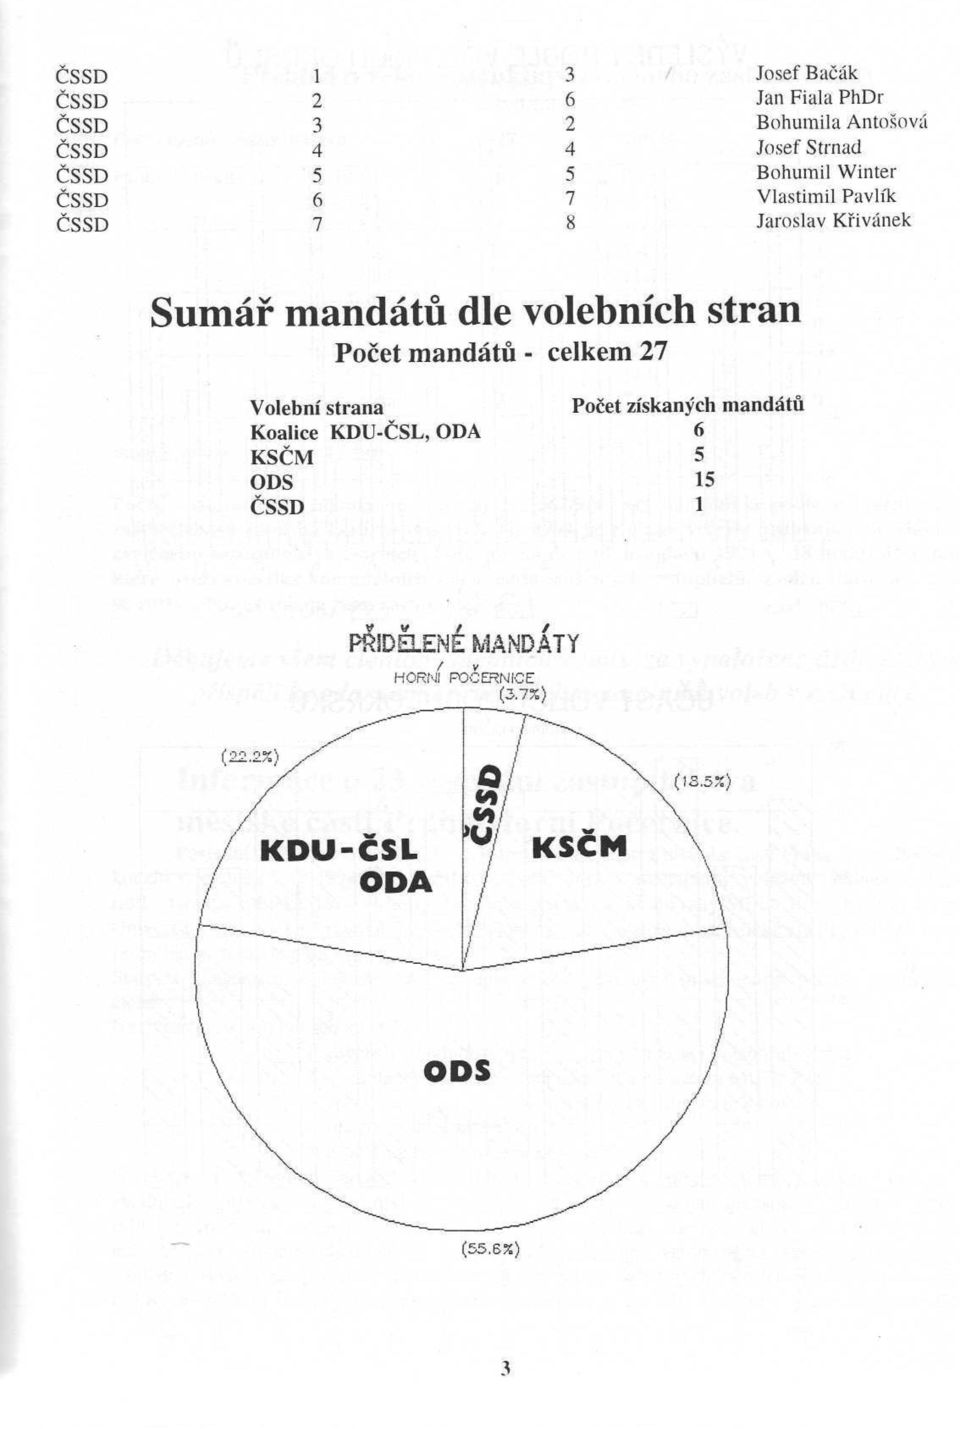 dle volebních stran Počet mandátů - celkem 27 Volební strana Koalice KDU-ČSL, ODA ČSSD Počet